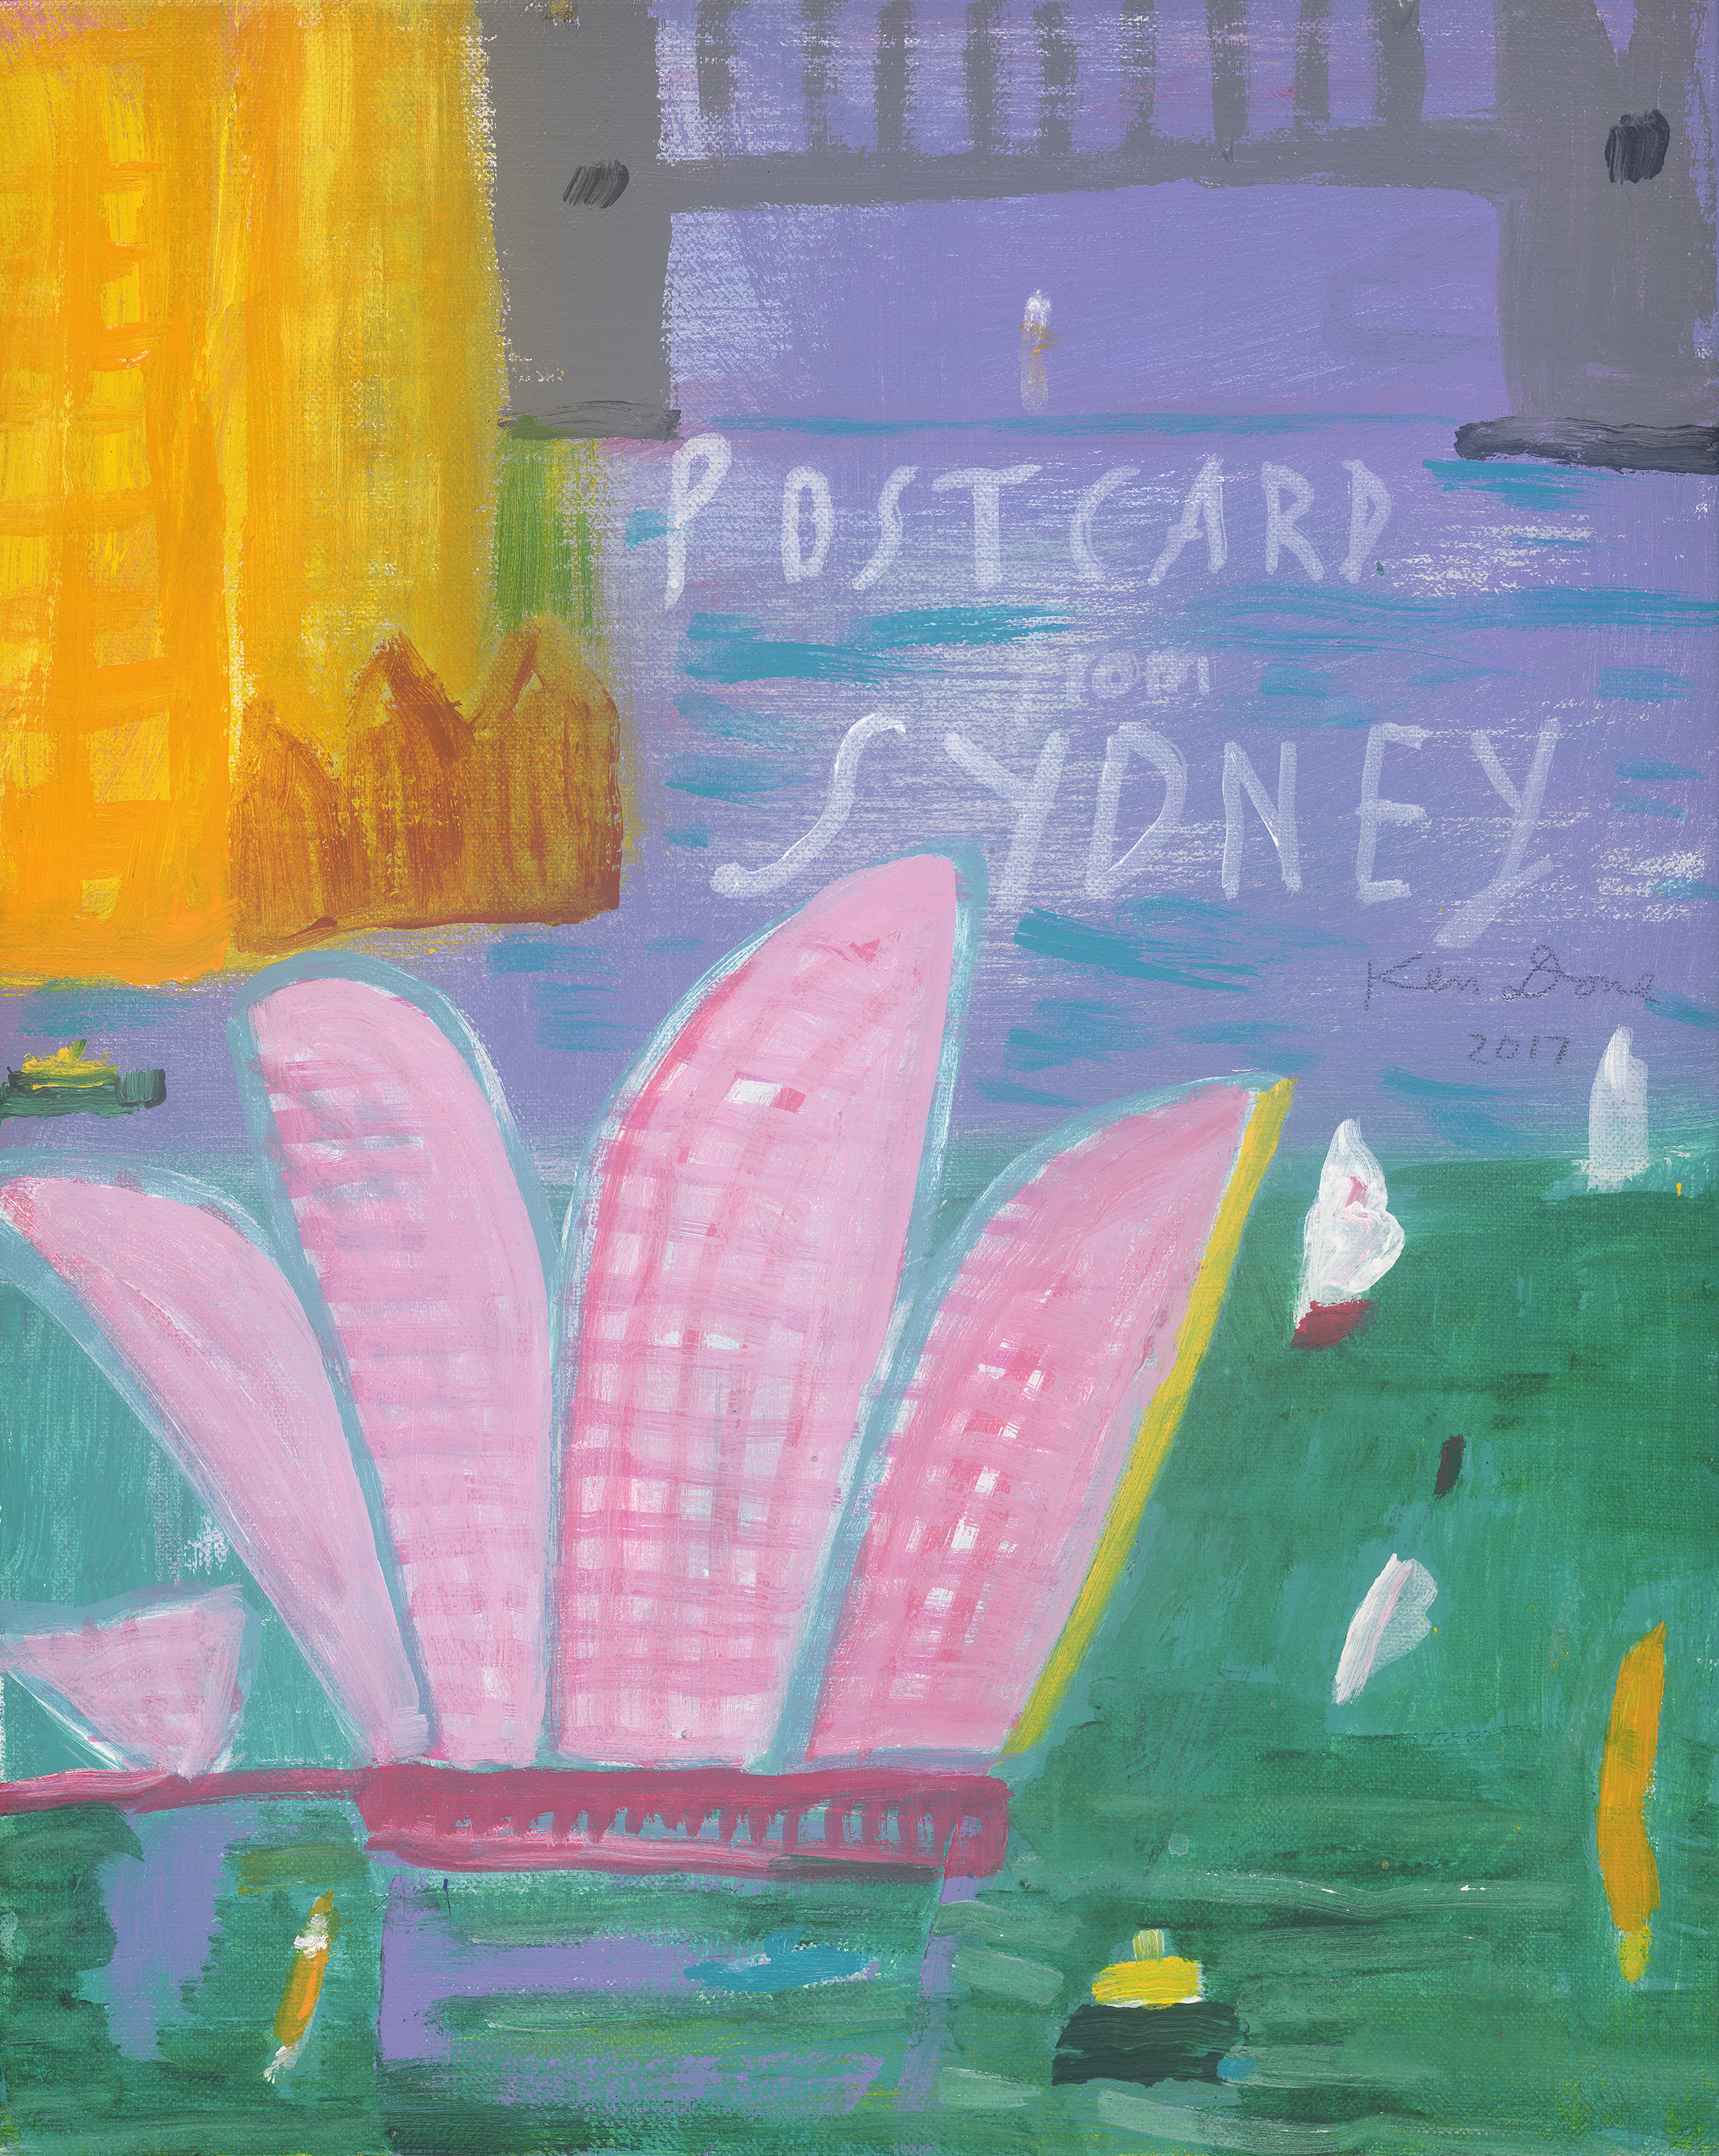 Postcard from Sydney, lilac sea